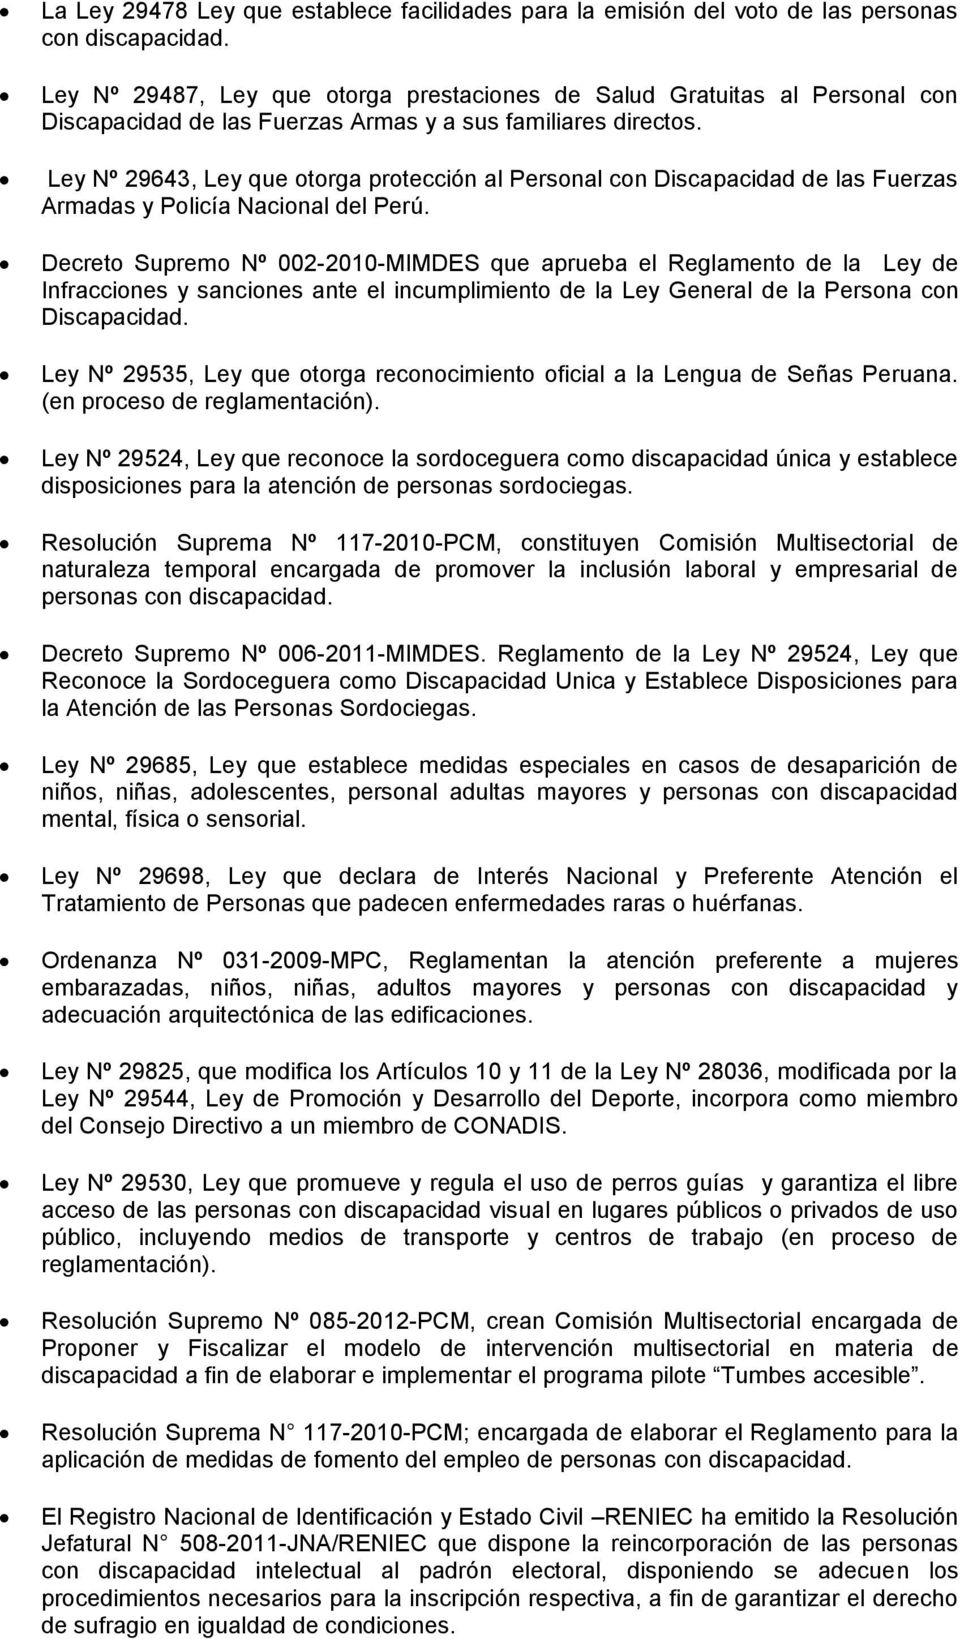 Ley Nº 29643, Ley que otorga protección al Personal con Discapacidad de las Fuerzas Armadas y Policía Nacional del Perú.